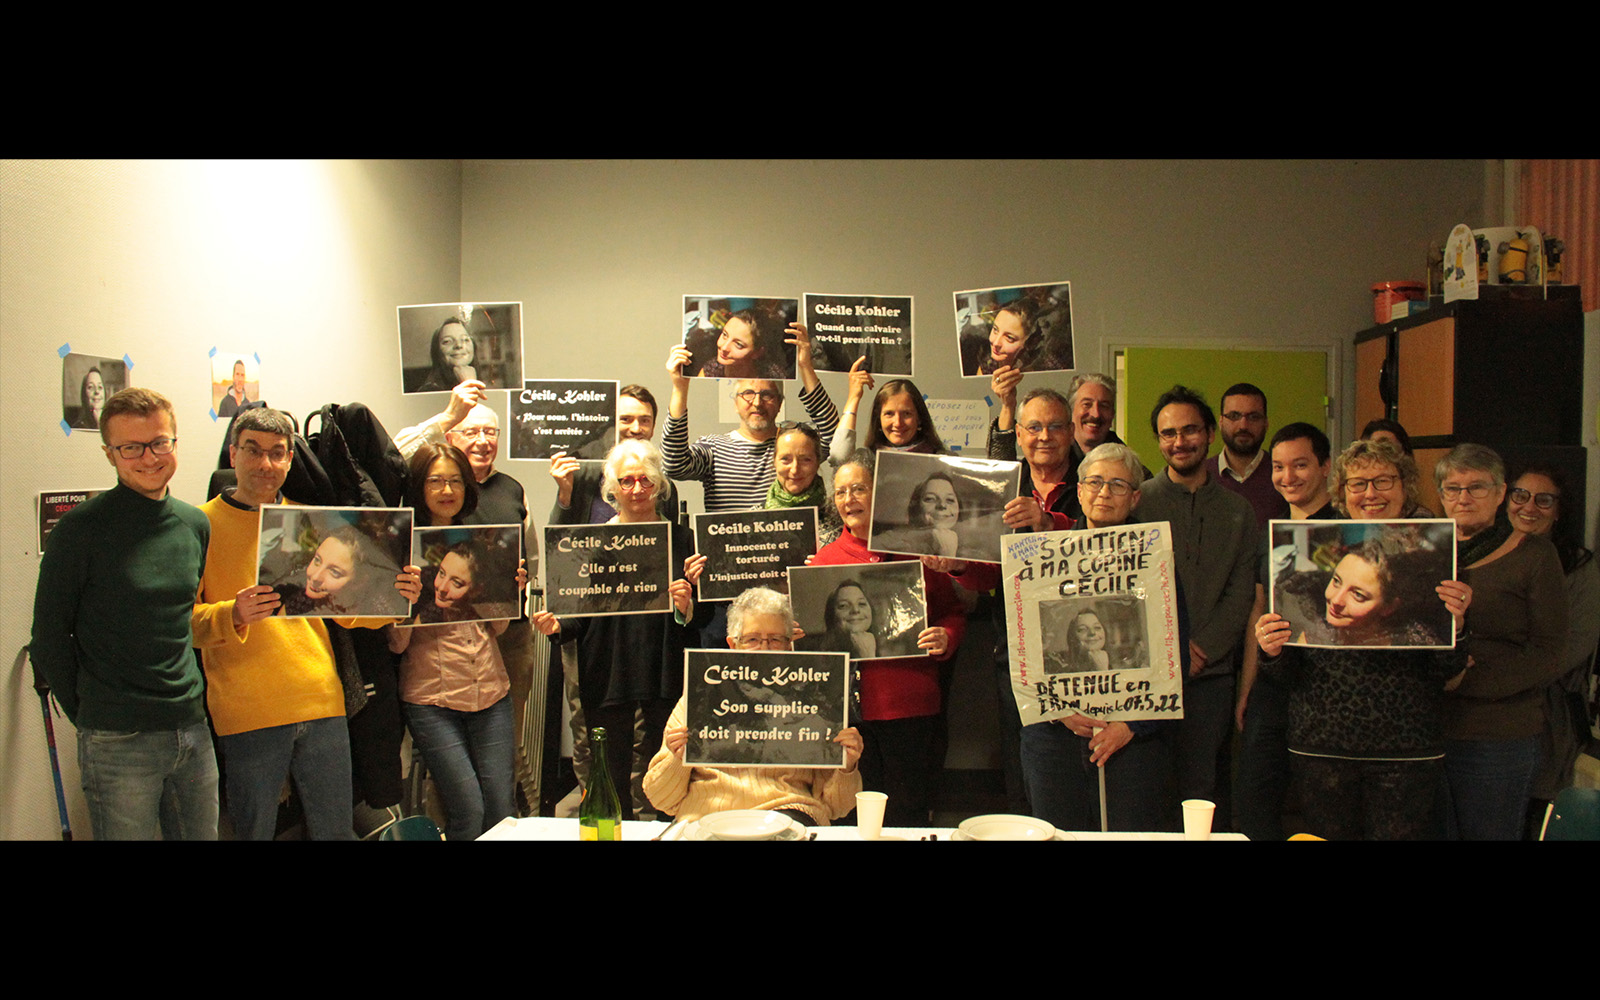 Les amis de Cécile Kohler organisent une soupe solidaire à Nanterre pour la soutenir